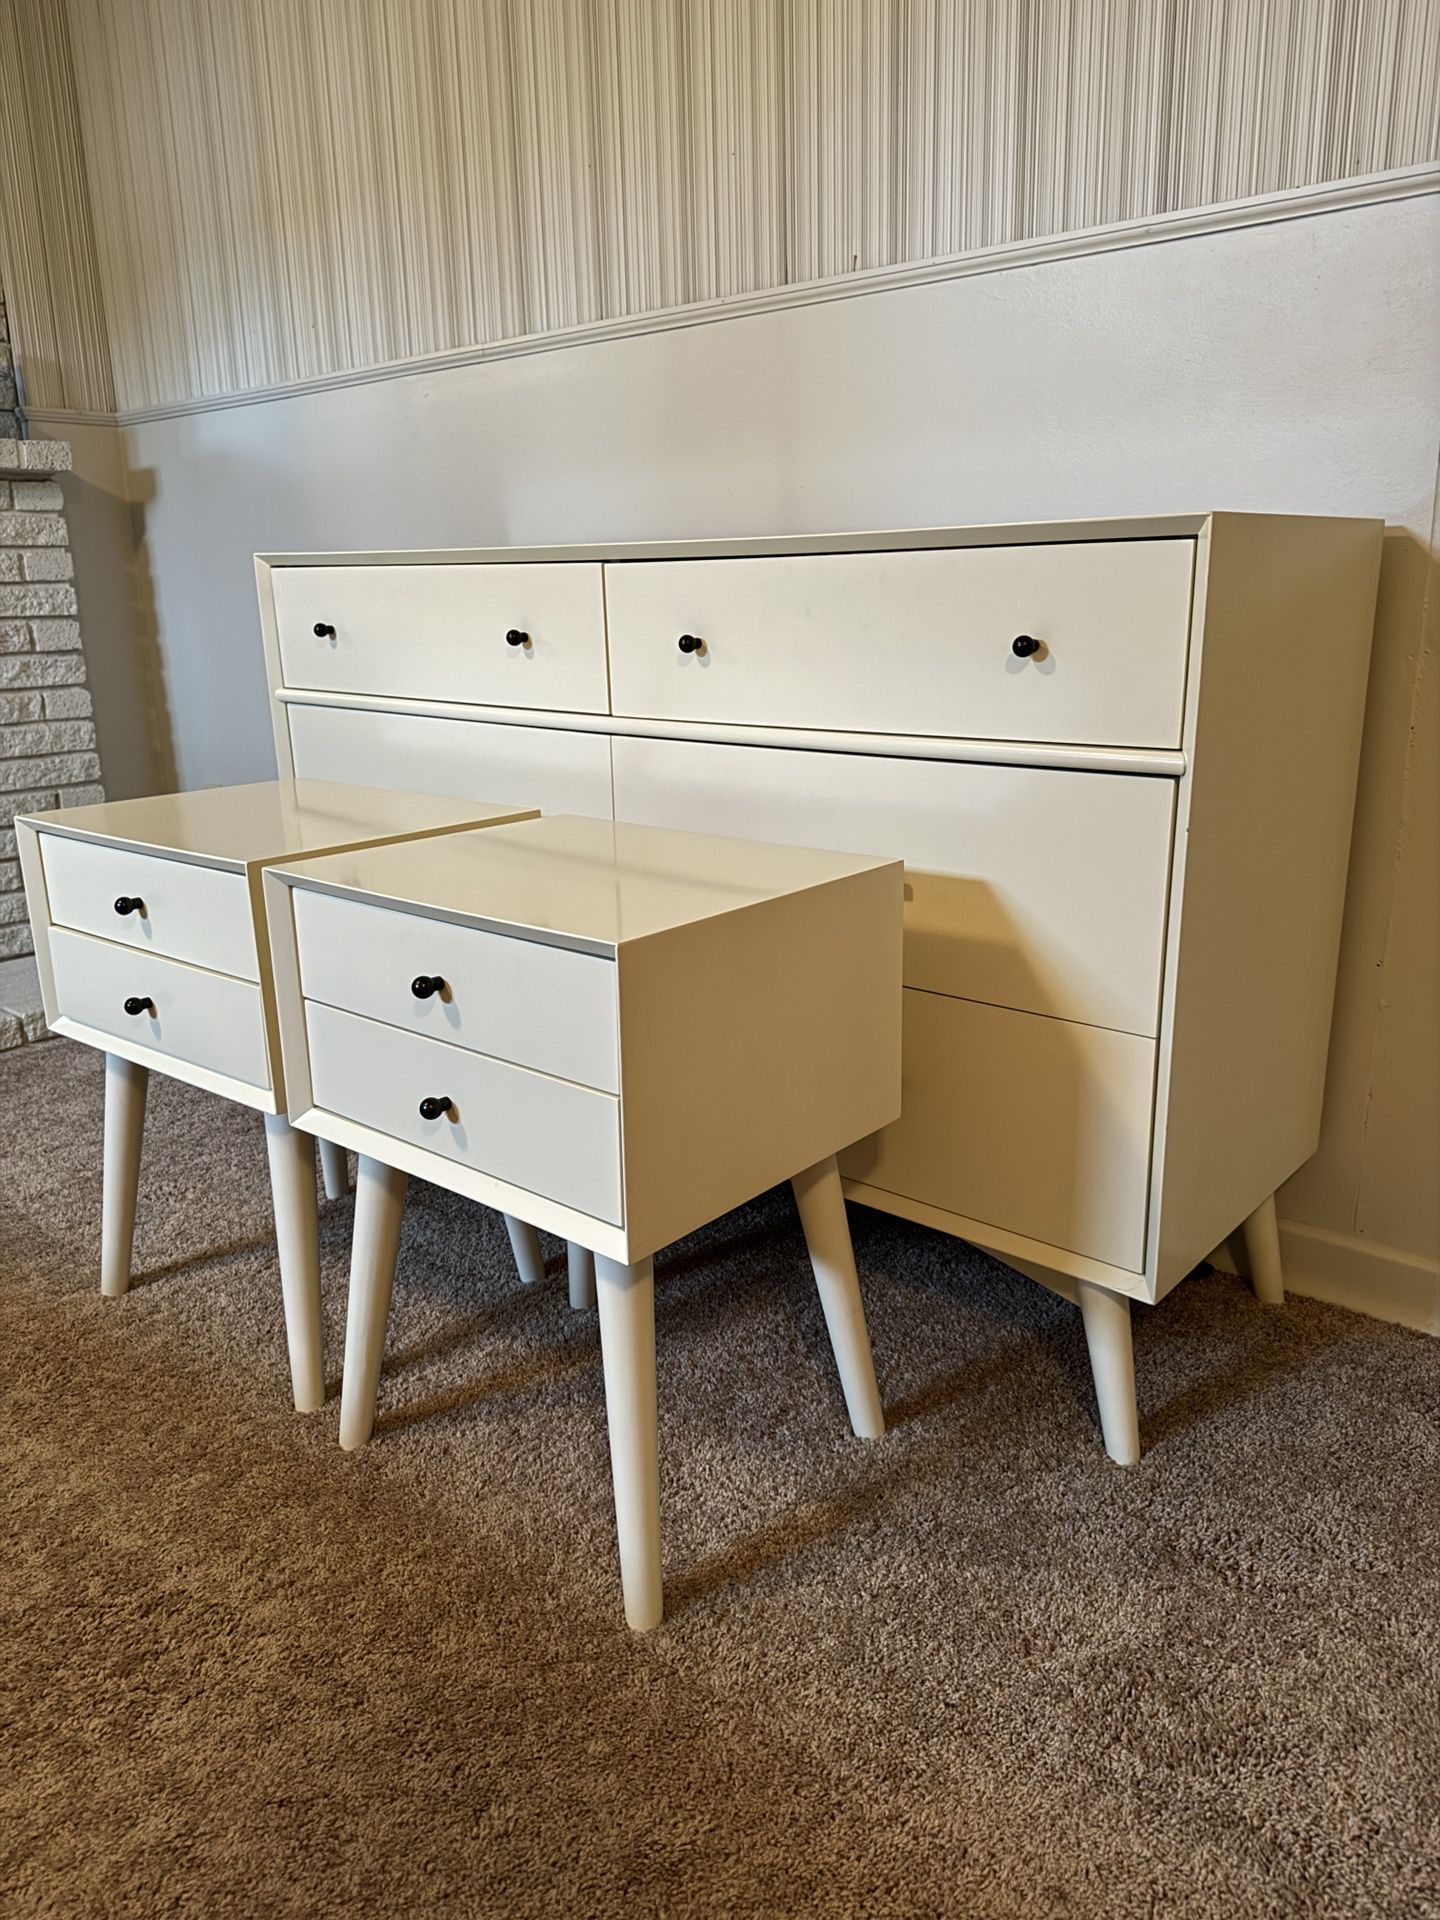 Pending Pick Up - Mid Century Modern Dresser & nightstands